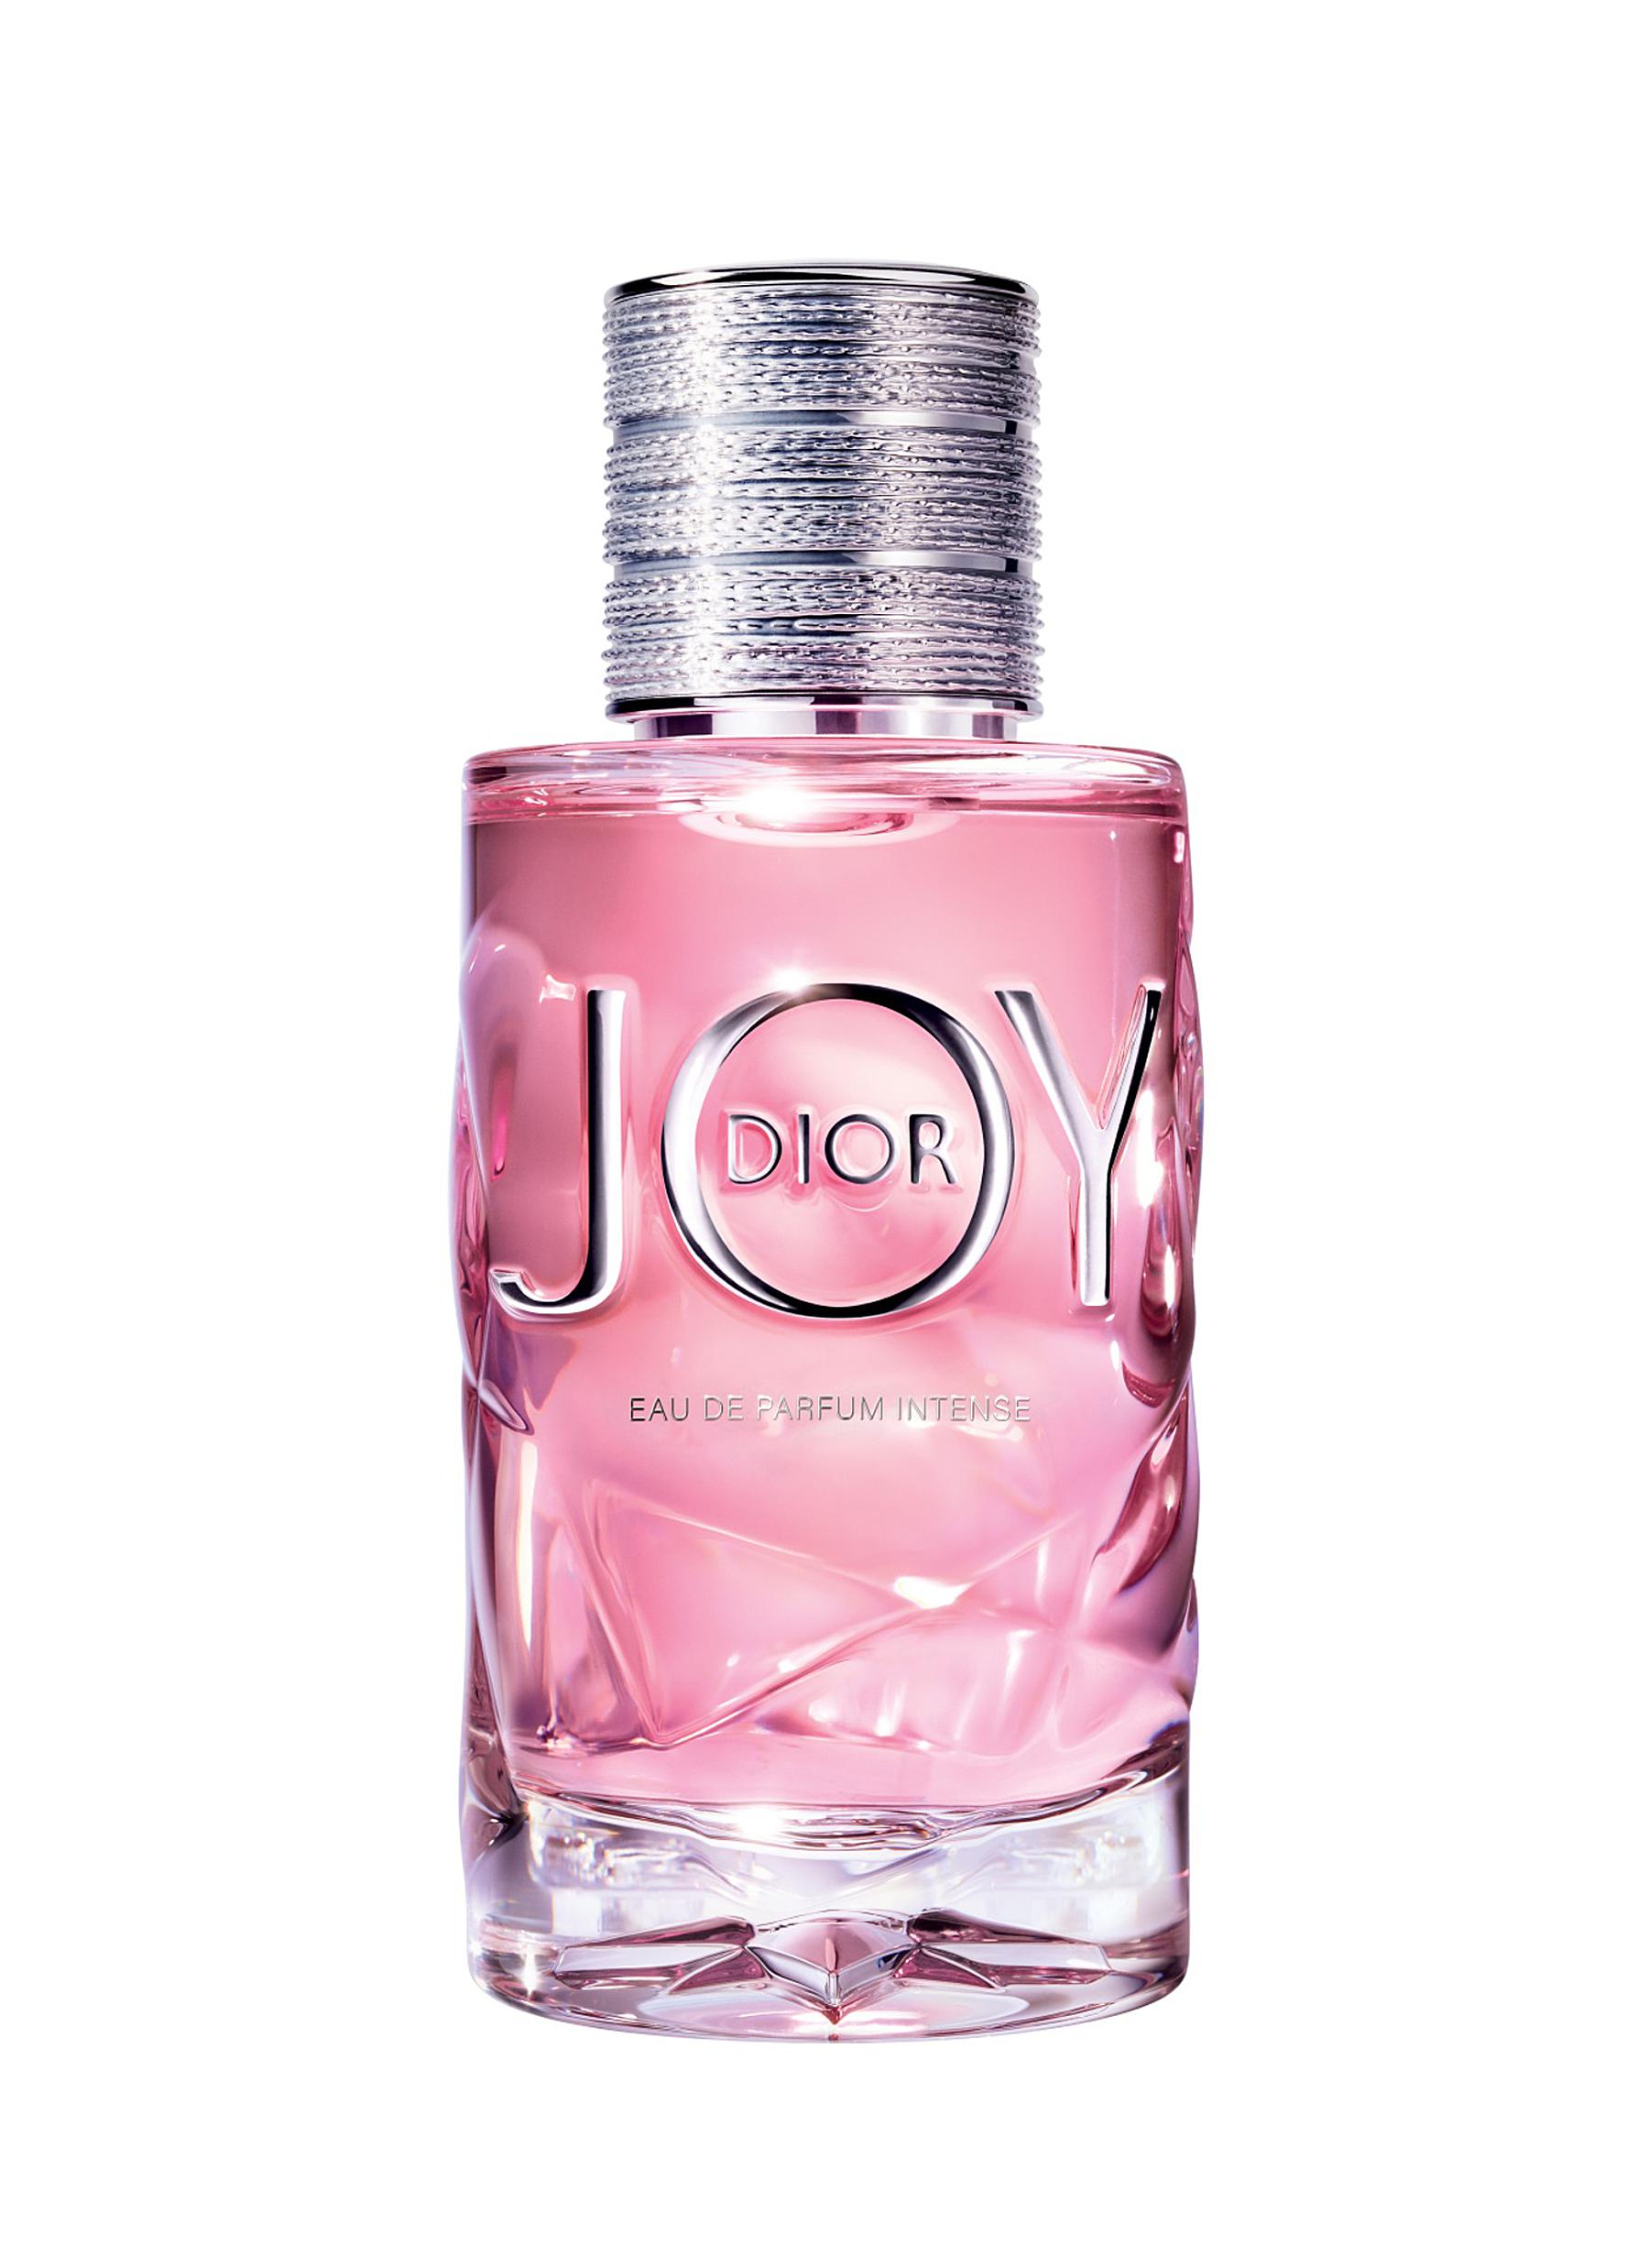 joy by dior eau de parfum